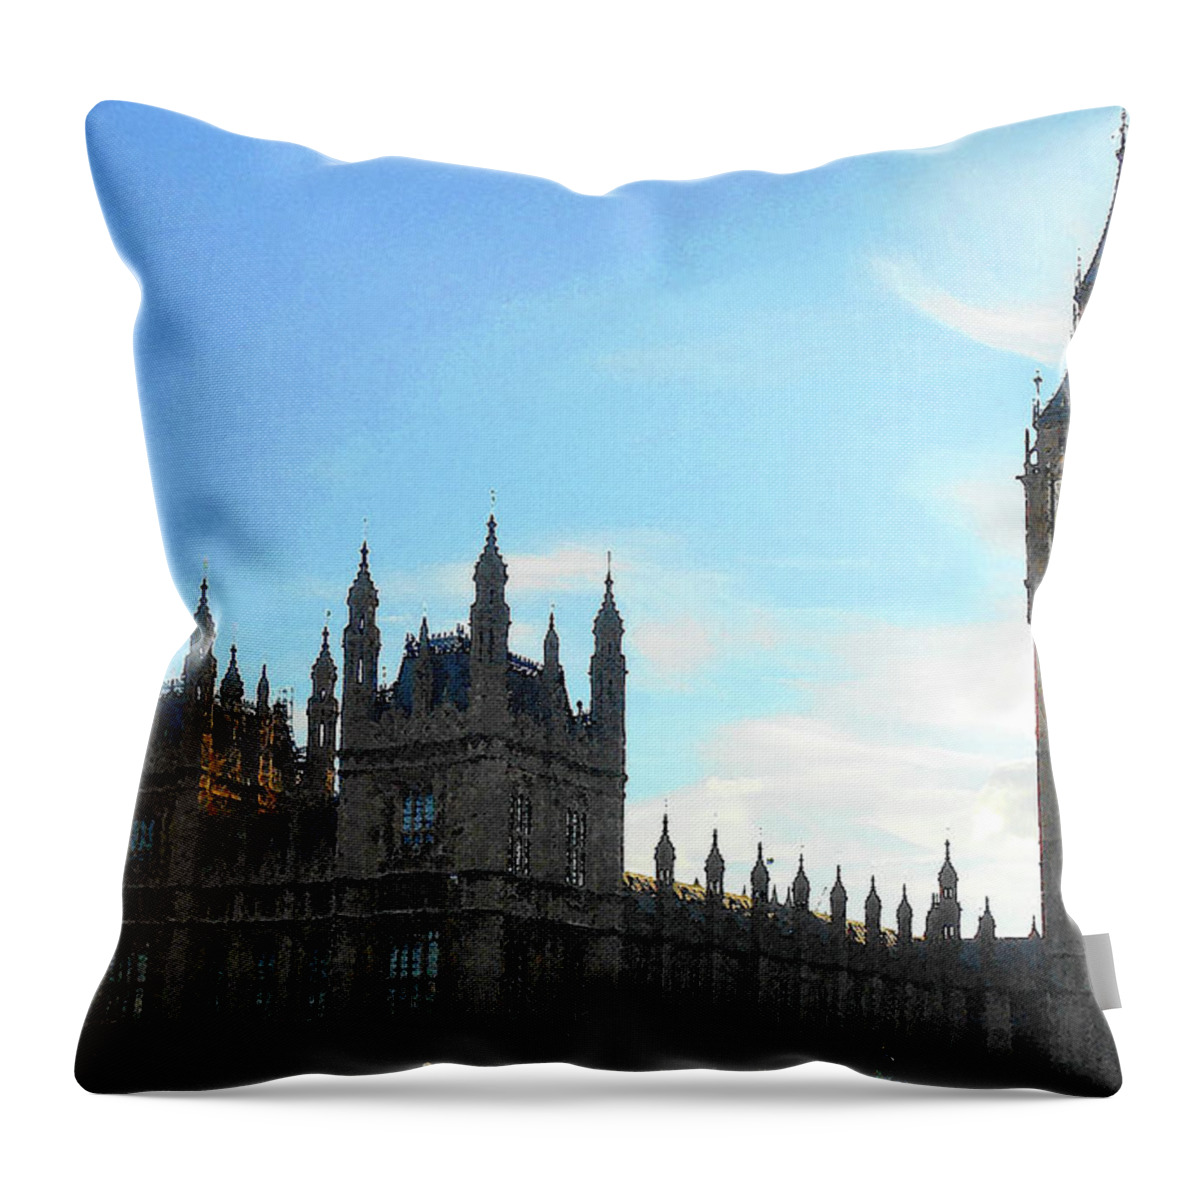 London Throw Pillow featuring the photograph Palace of Westminster And Big Ben by Irina Sztukowski